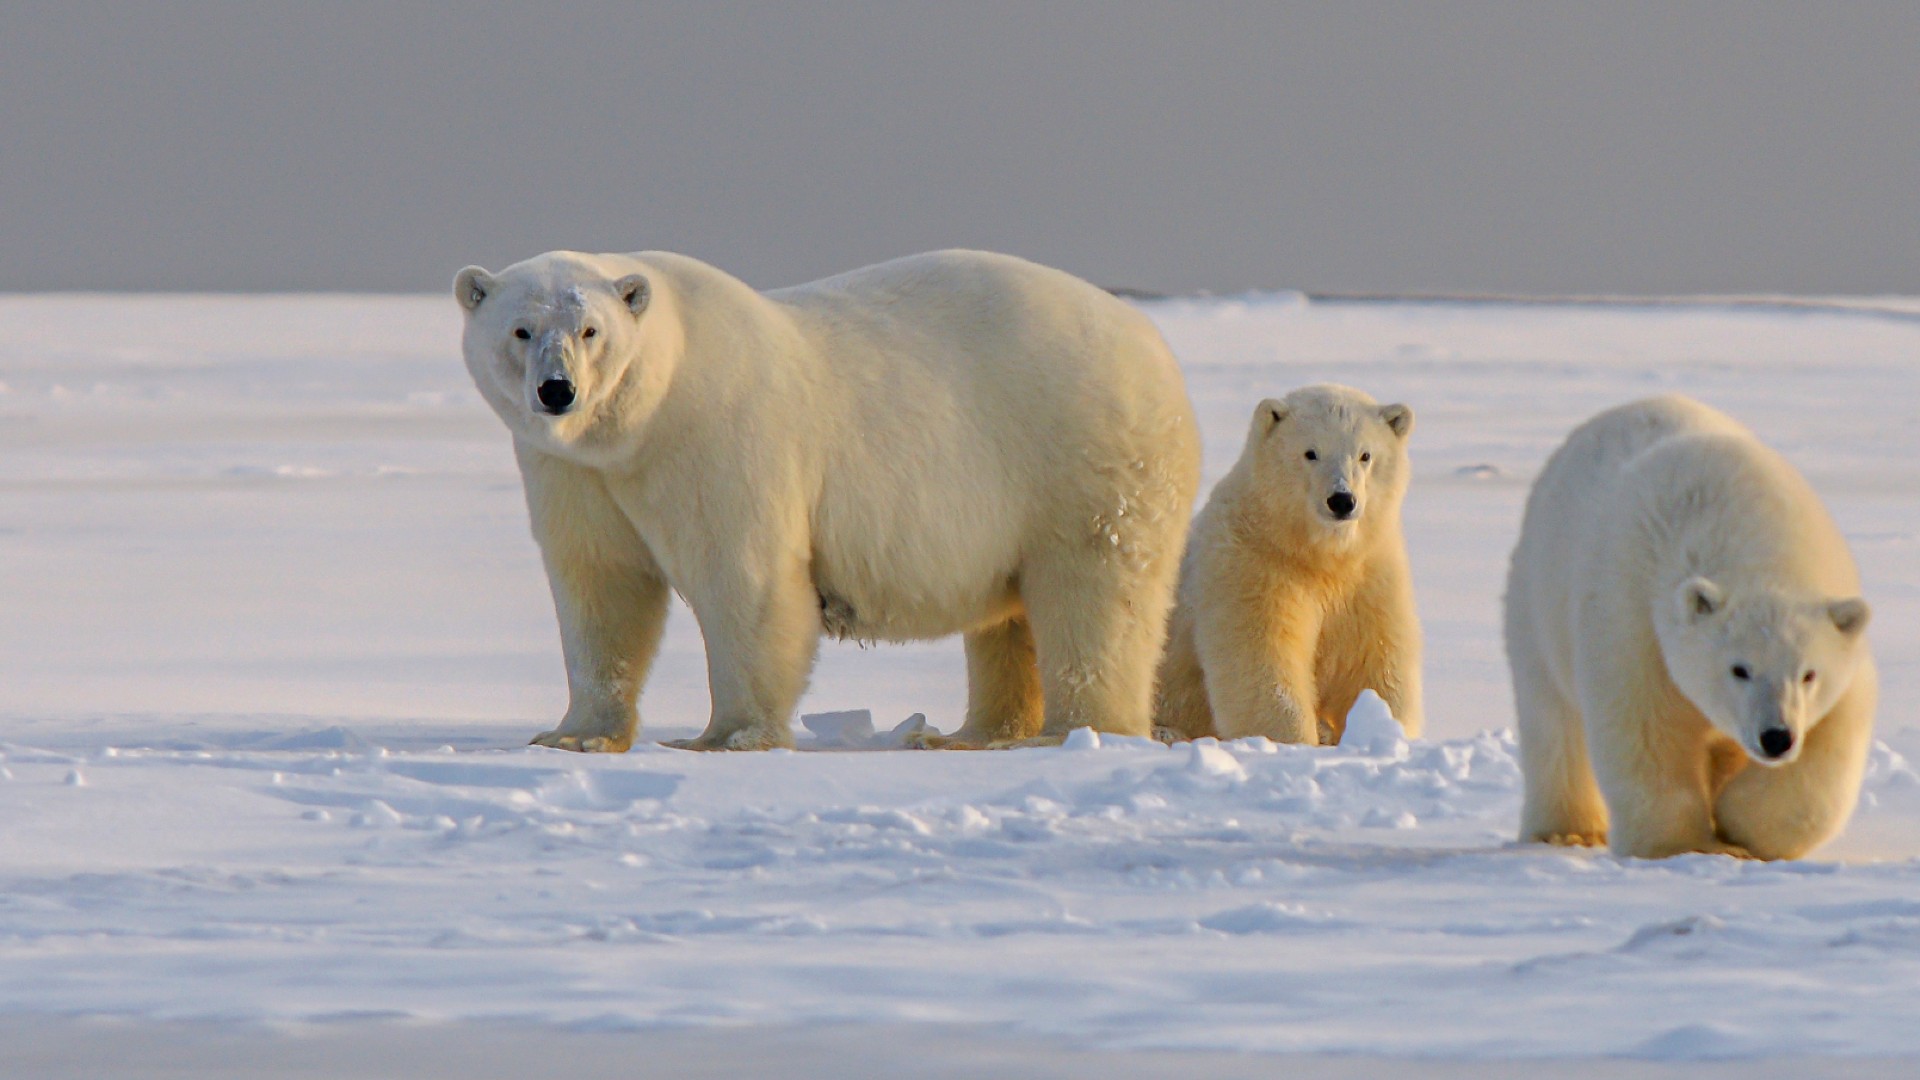 https://www.bornfree.org.uk/wp-content/uploads/2023/11/Polar-bears-c-hans-jurgen-mager-unsplash-HERO-1.jpg